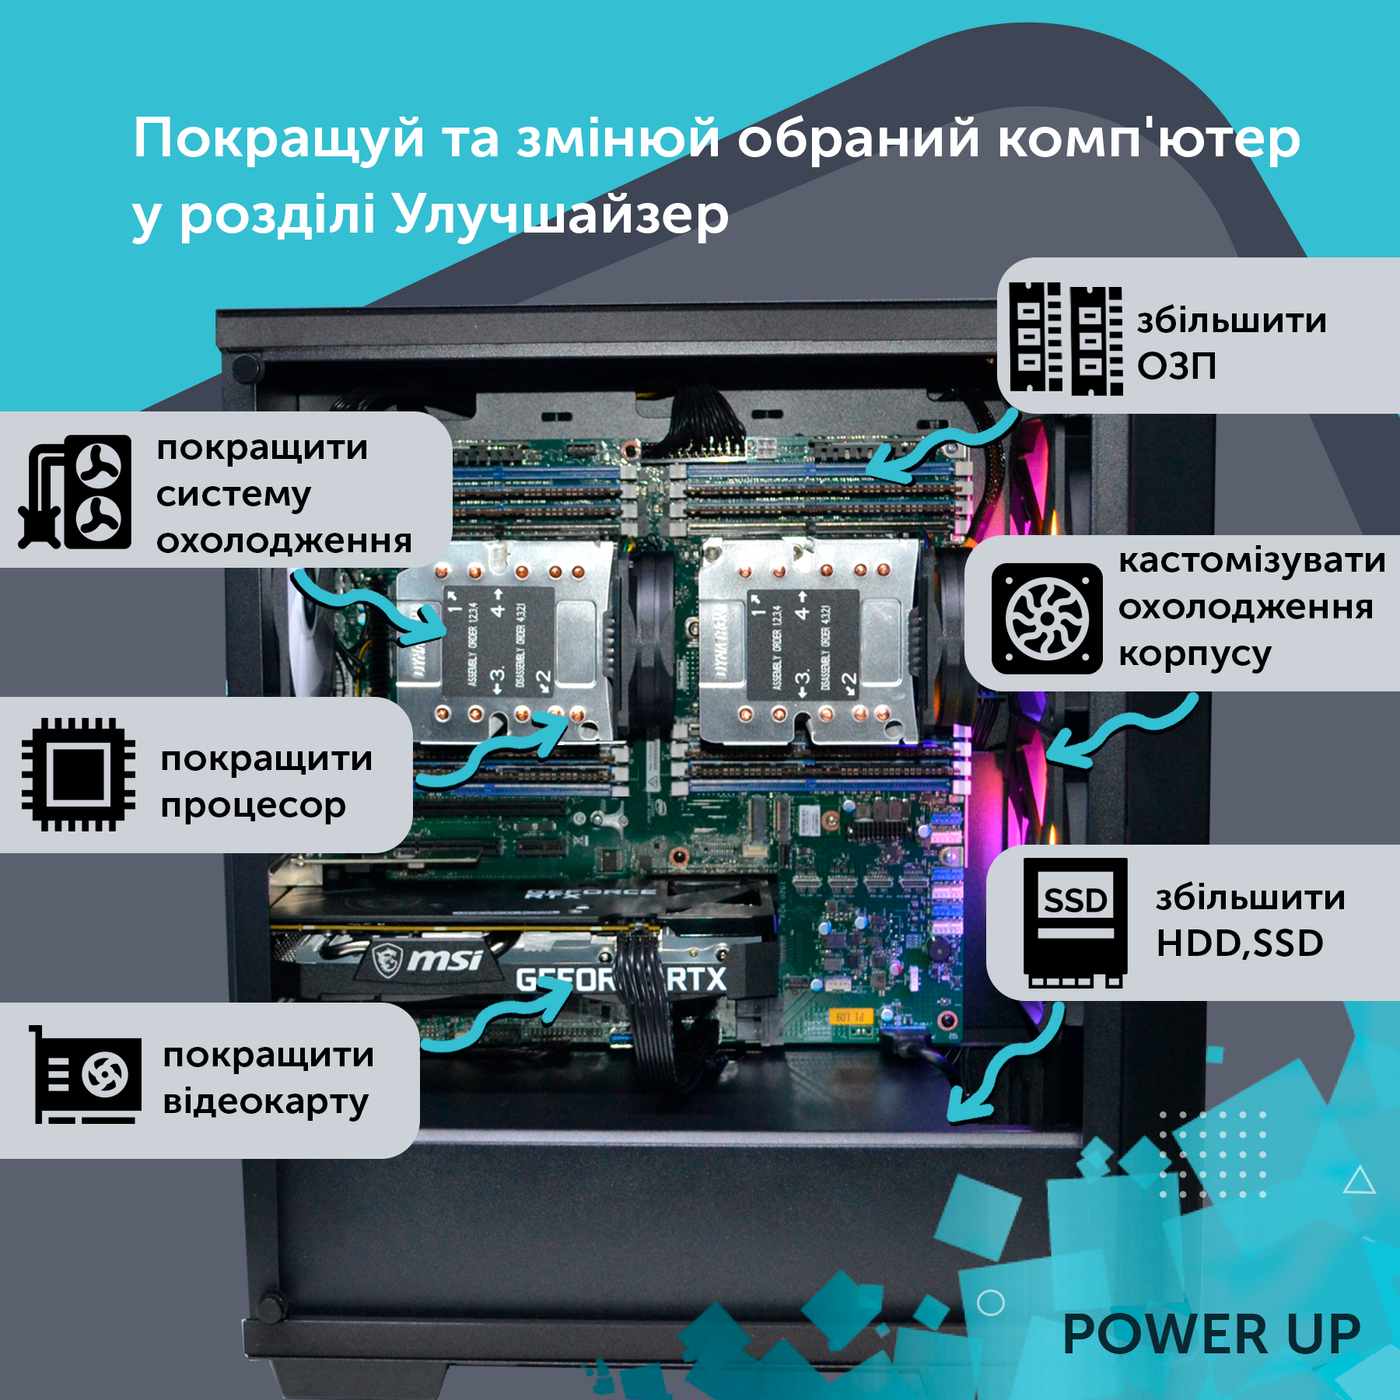 Робоча станція PowerUp #128 Xeon E5 2690 v3/32 GB/HDD 1 TB/SSD 256 GB/NVIDIA Quadro RTX A4000 16 GB